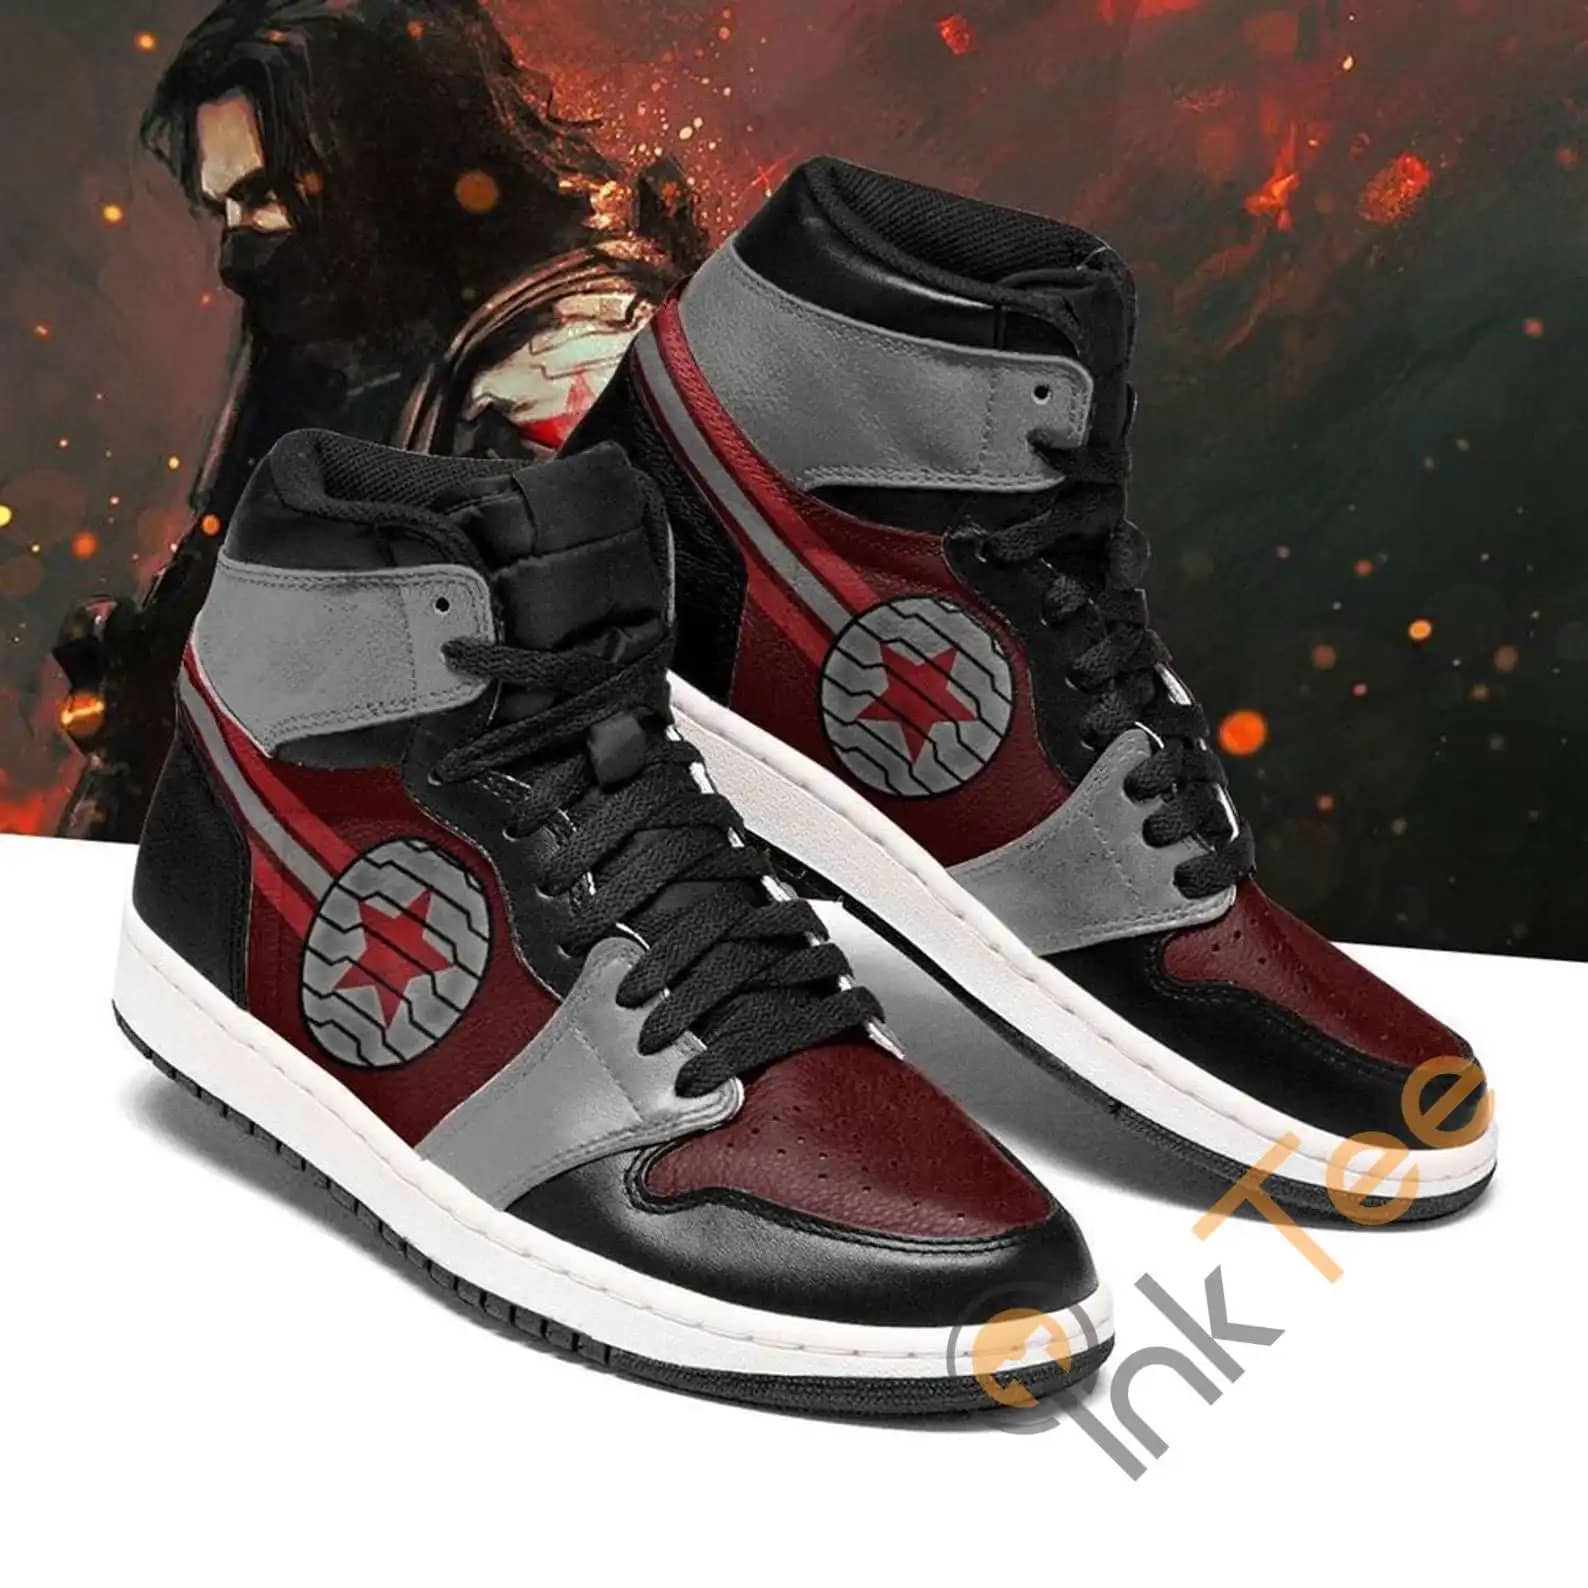 Winter Soldier V Marvel X Men Avengers Air Jordan Shoes